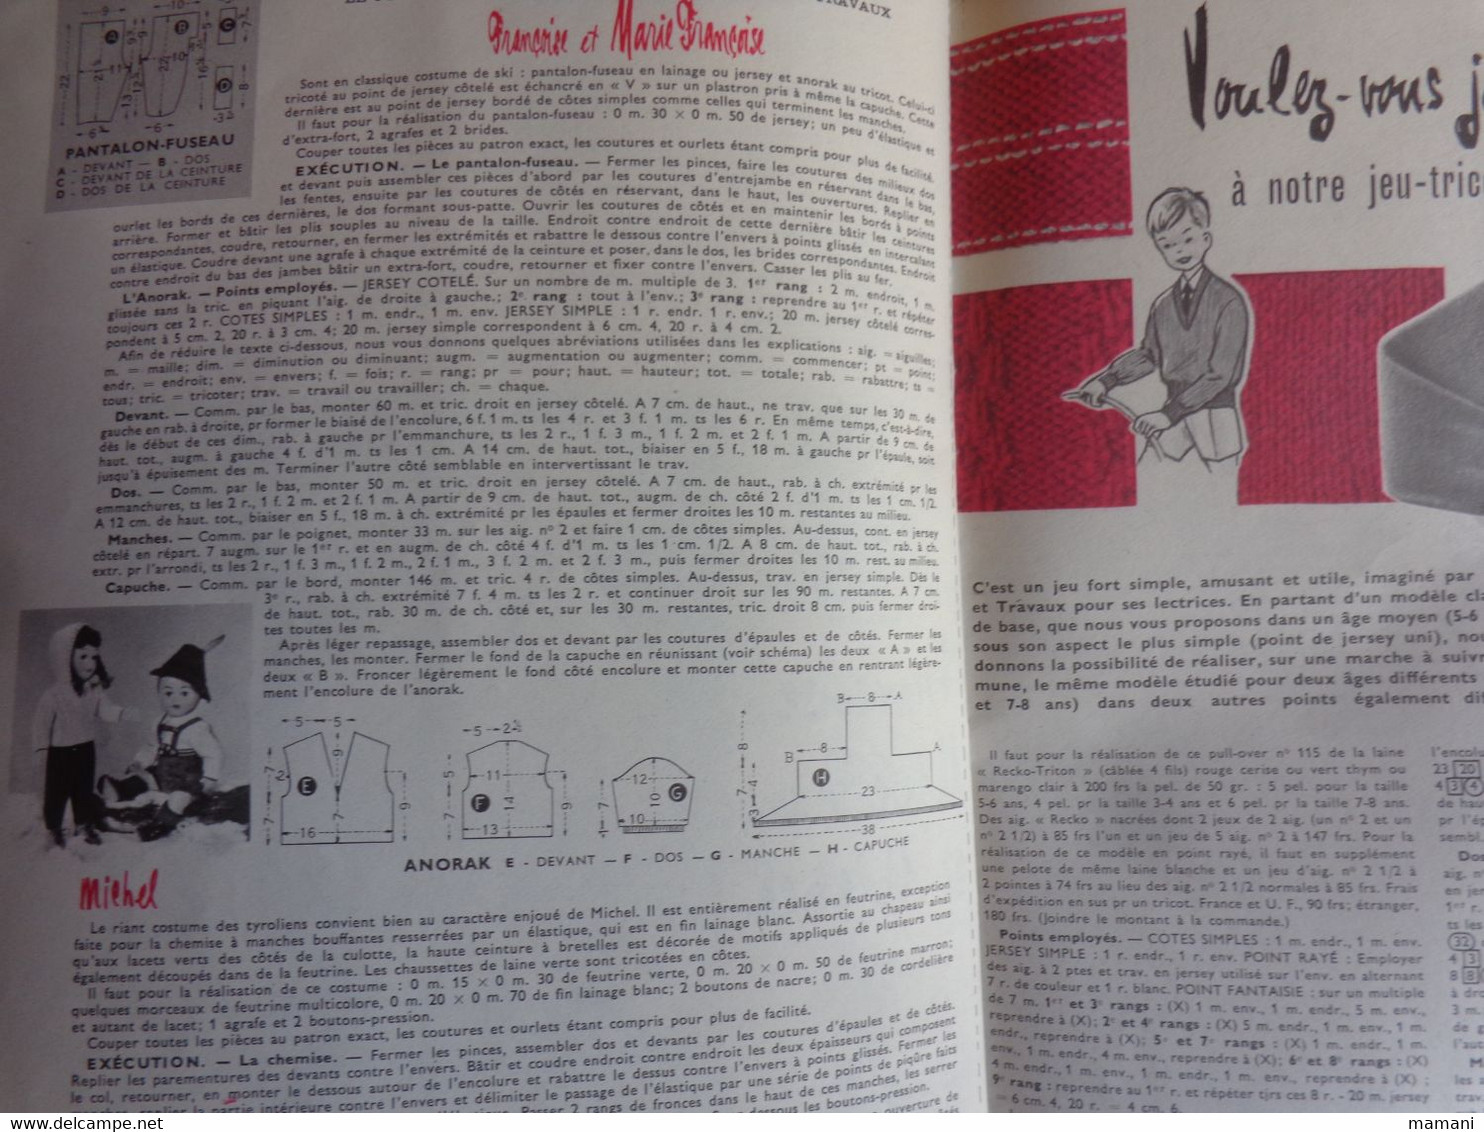 2 revues mode et travaux (explications de vetements pour francoise et michel) janvier 1959 et octobre 1957